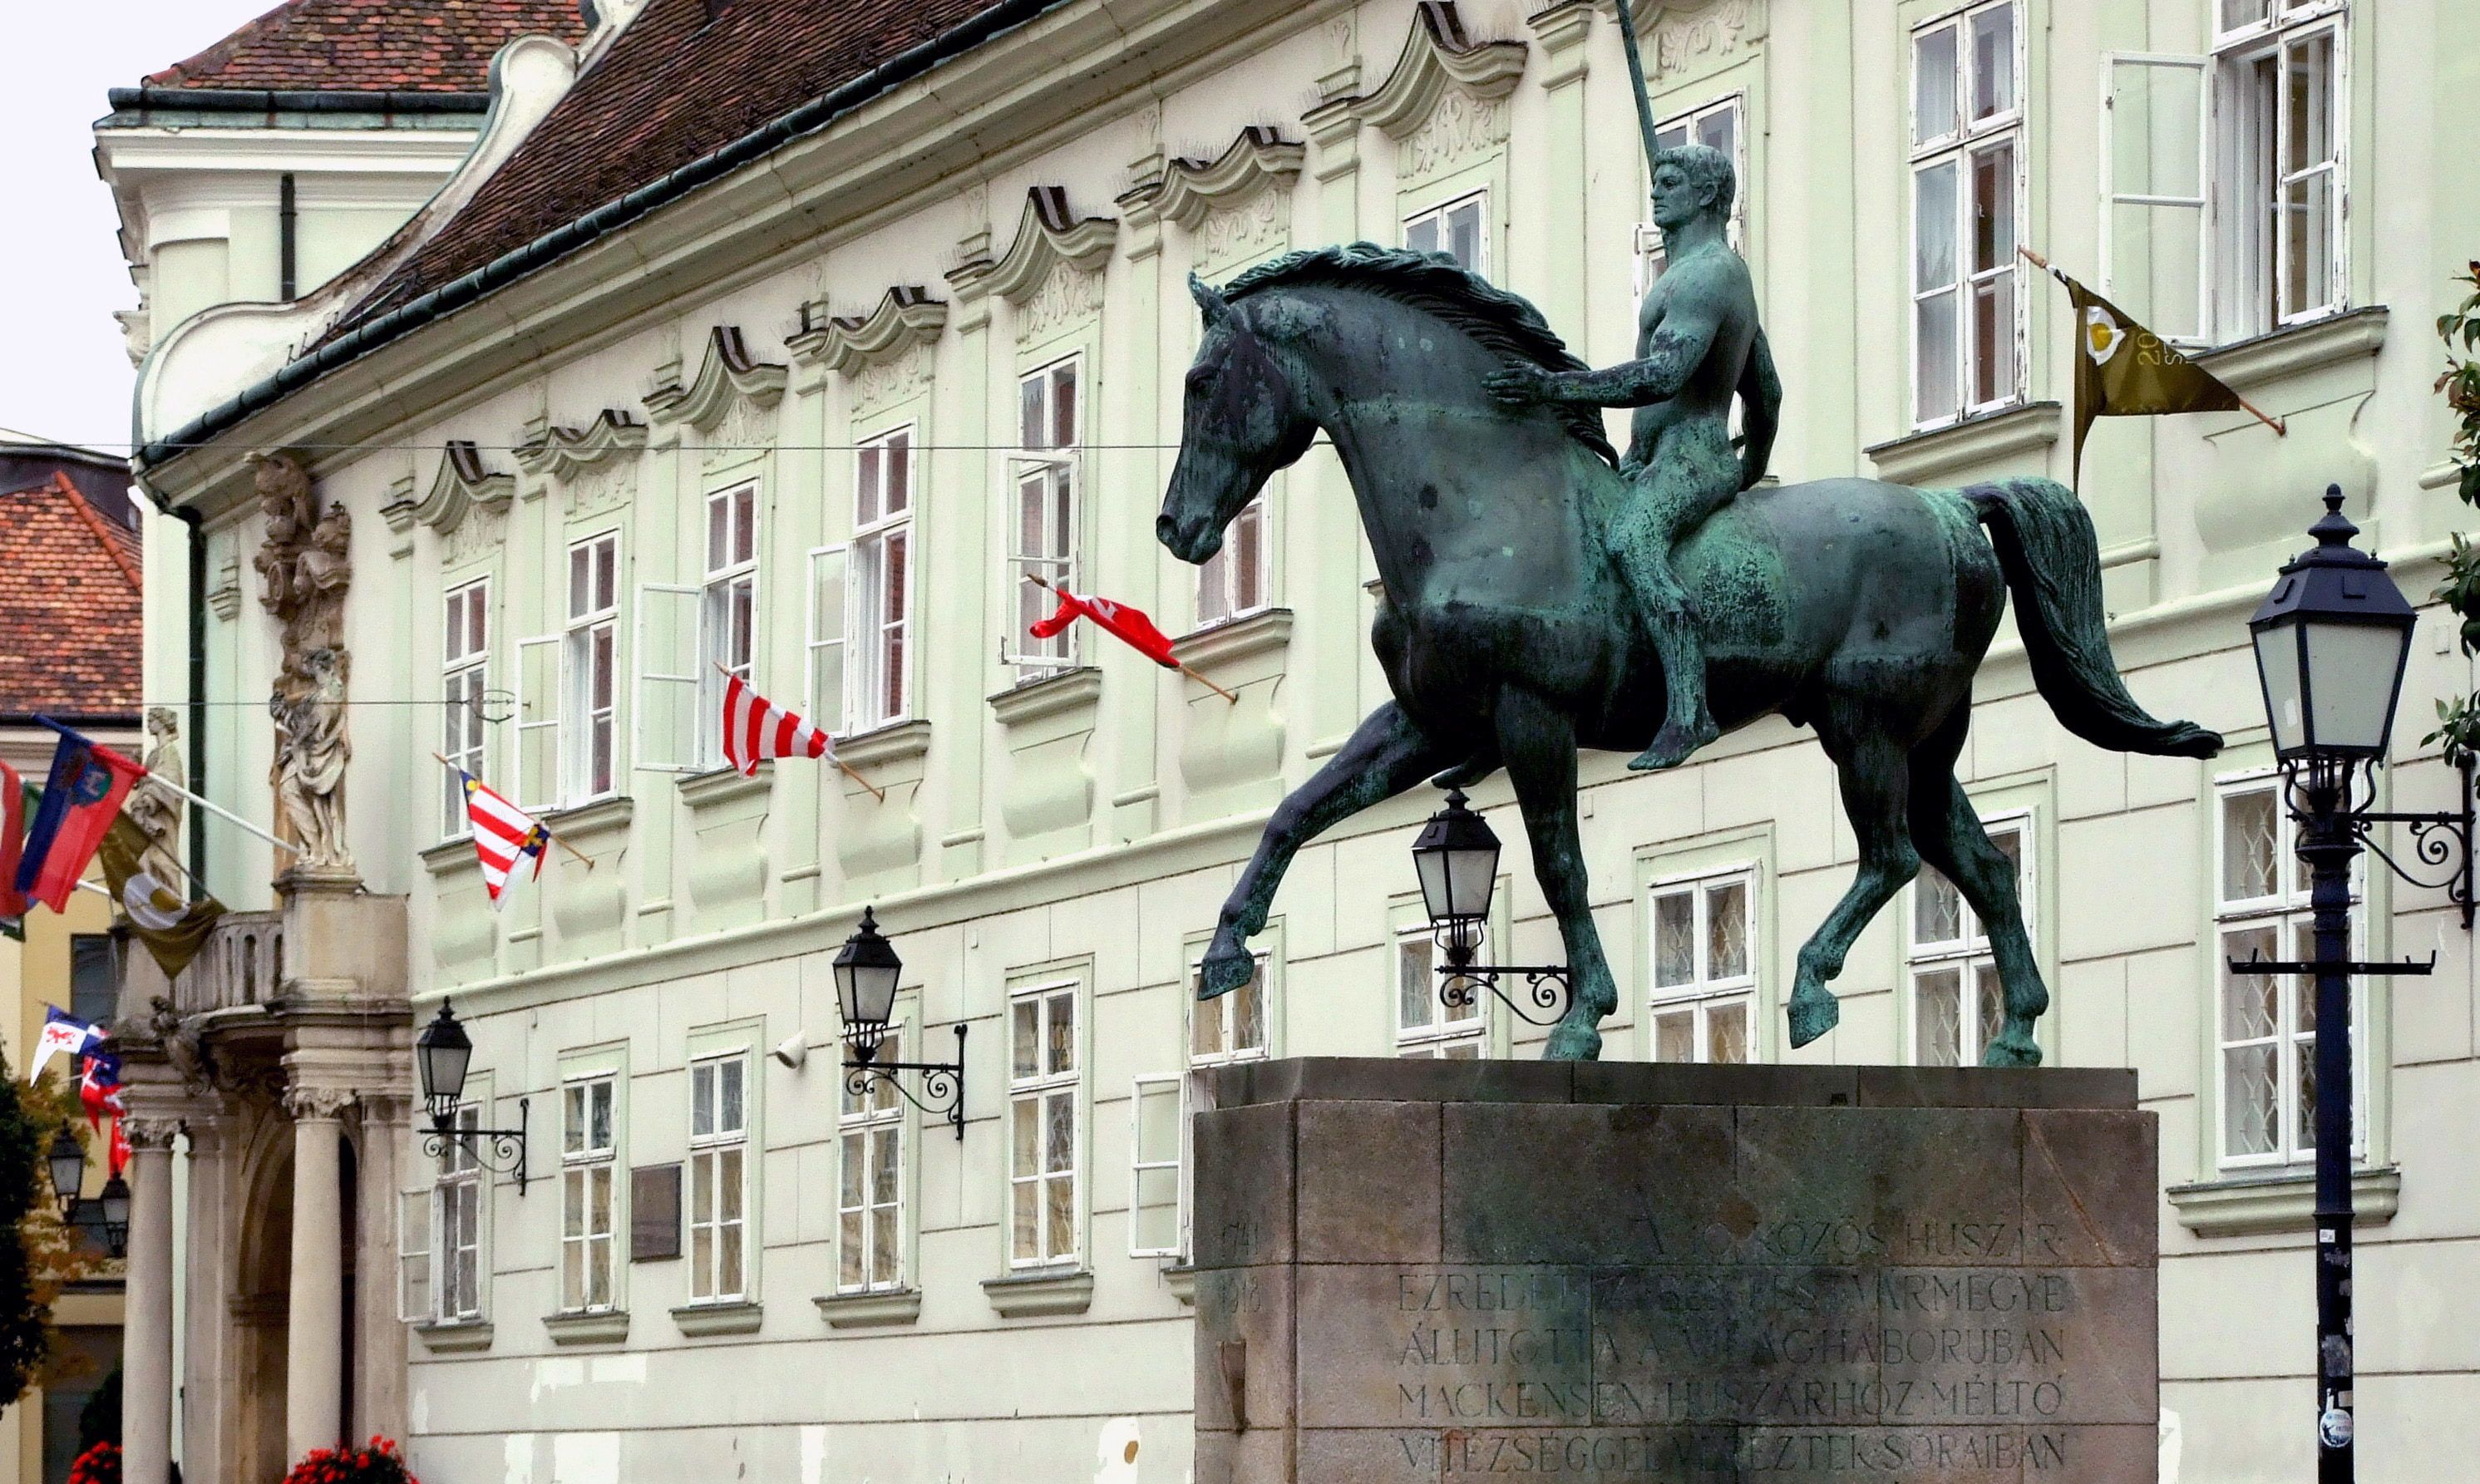 Feladta magát a férfi, aki letörte a kardot a székesfehérvári lovas szoborról